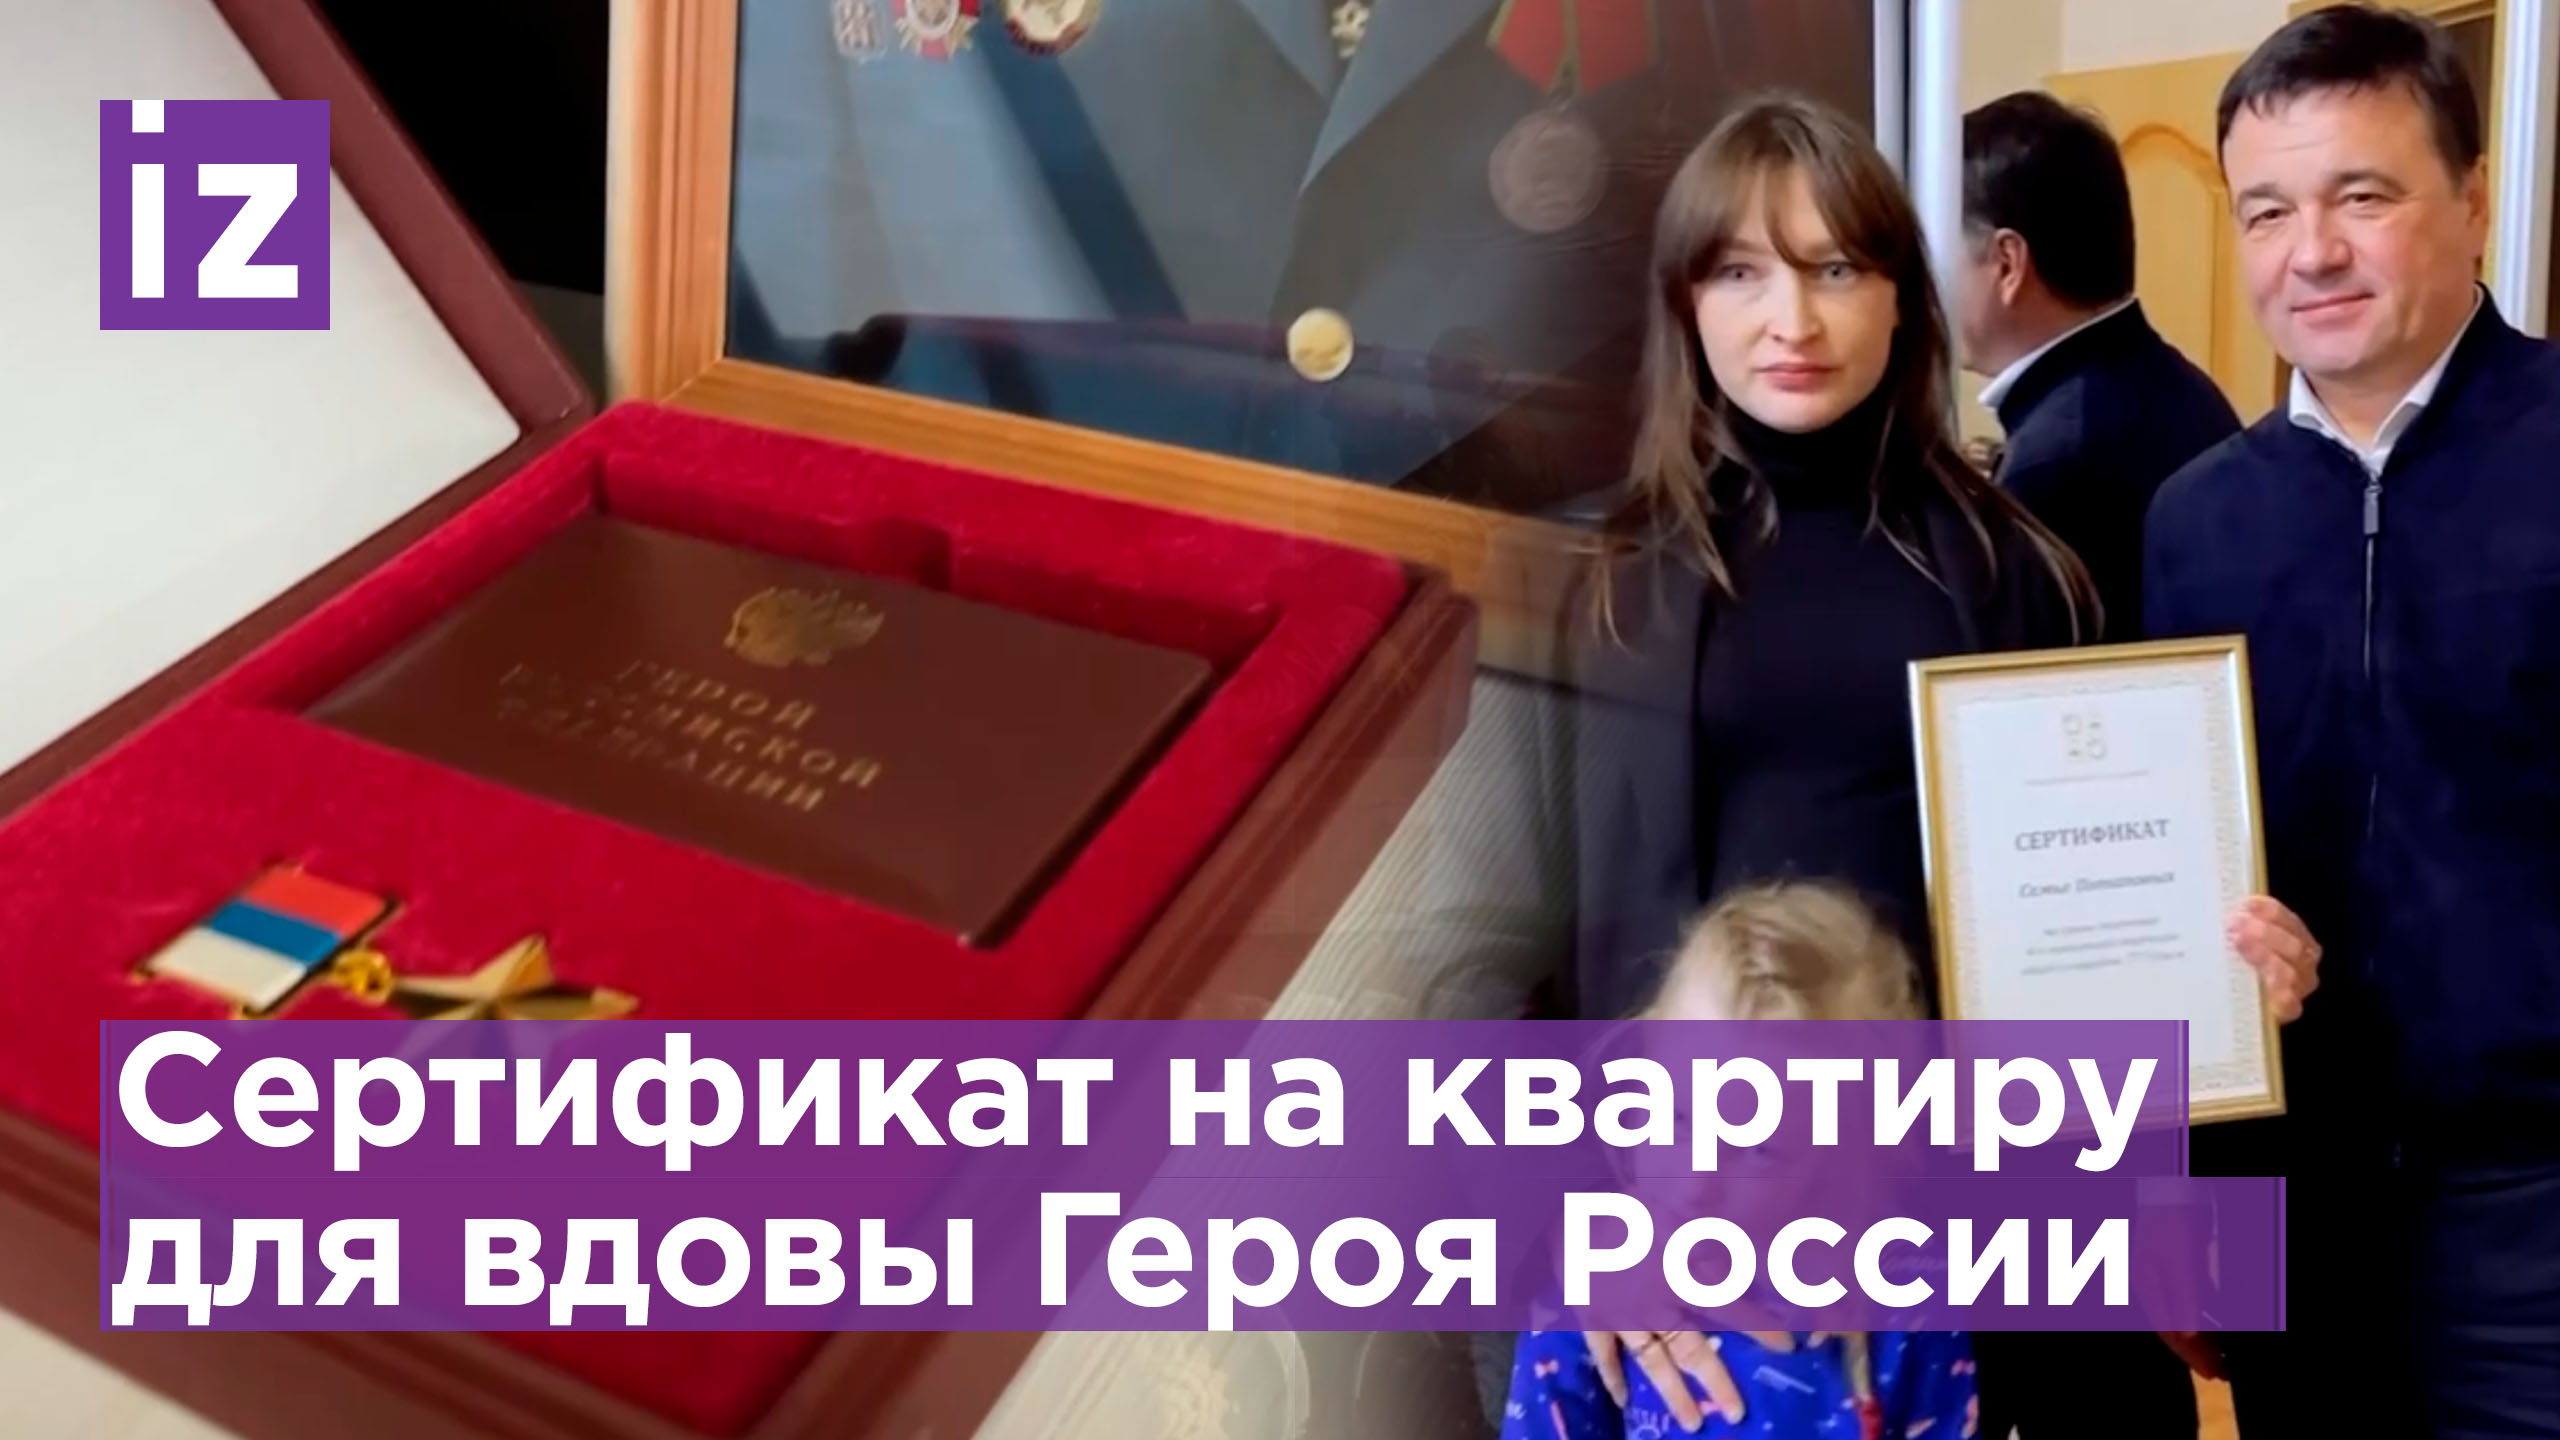 Беременная жена погибшего Героя России и мать двоих детей получила сертификат на жилье в Подмосковье